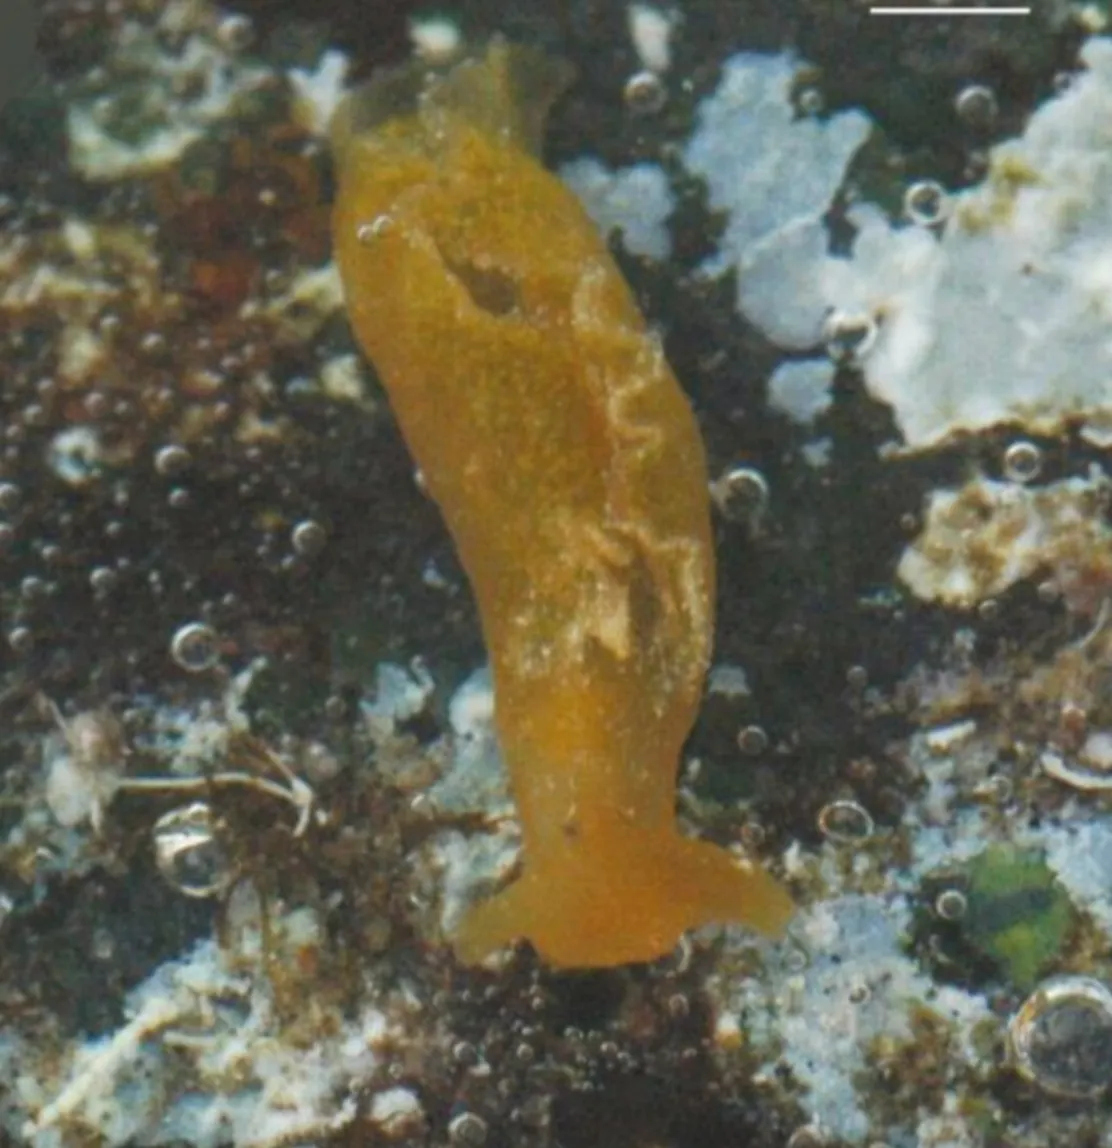 Elysia azorica, або морський слимак Азорських островів, у природному середовищі існування